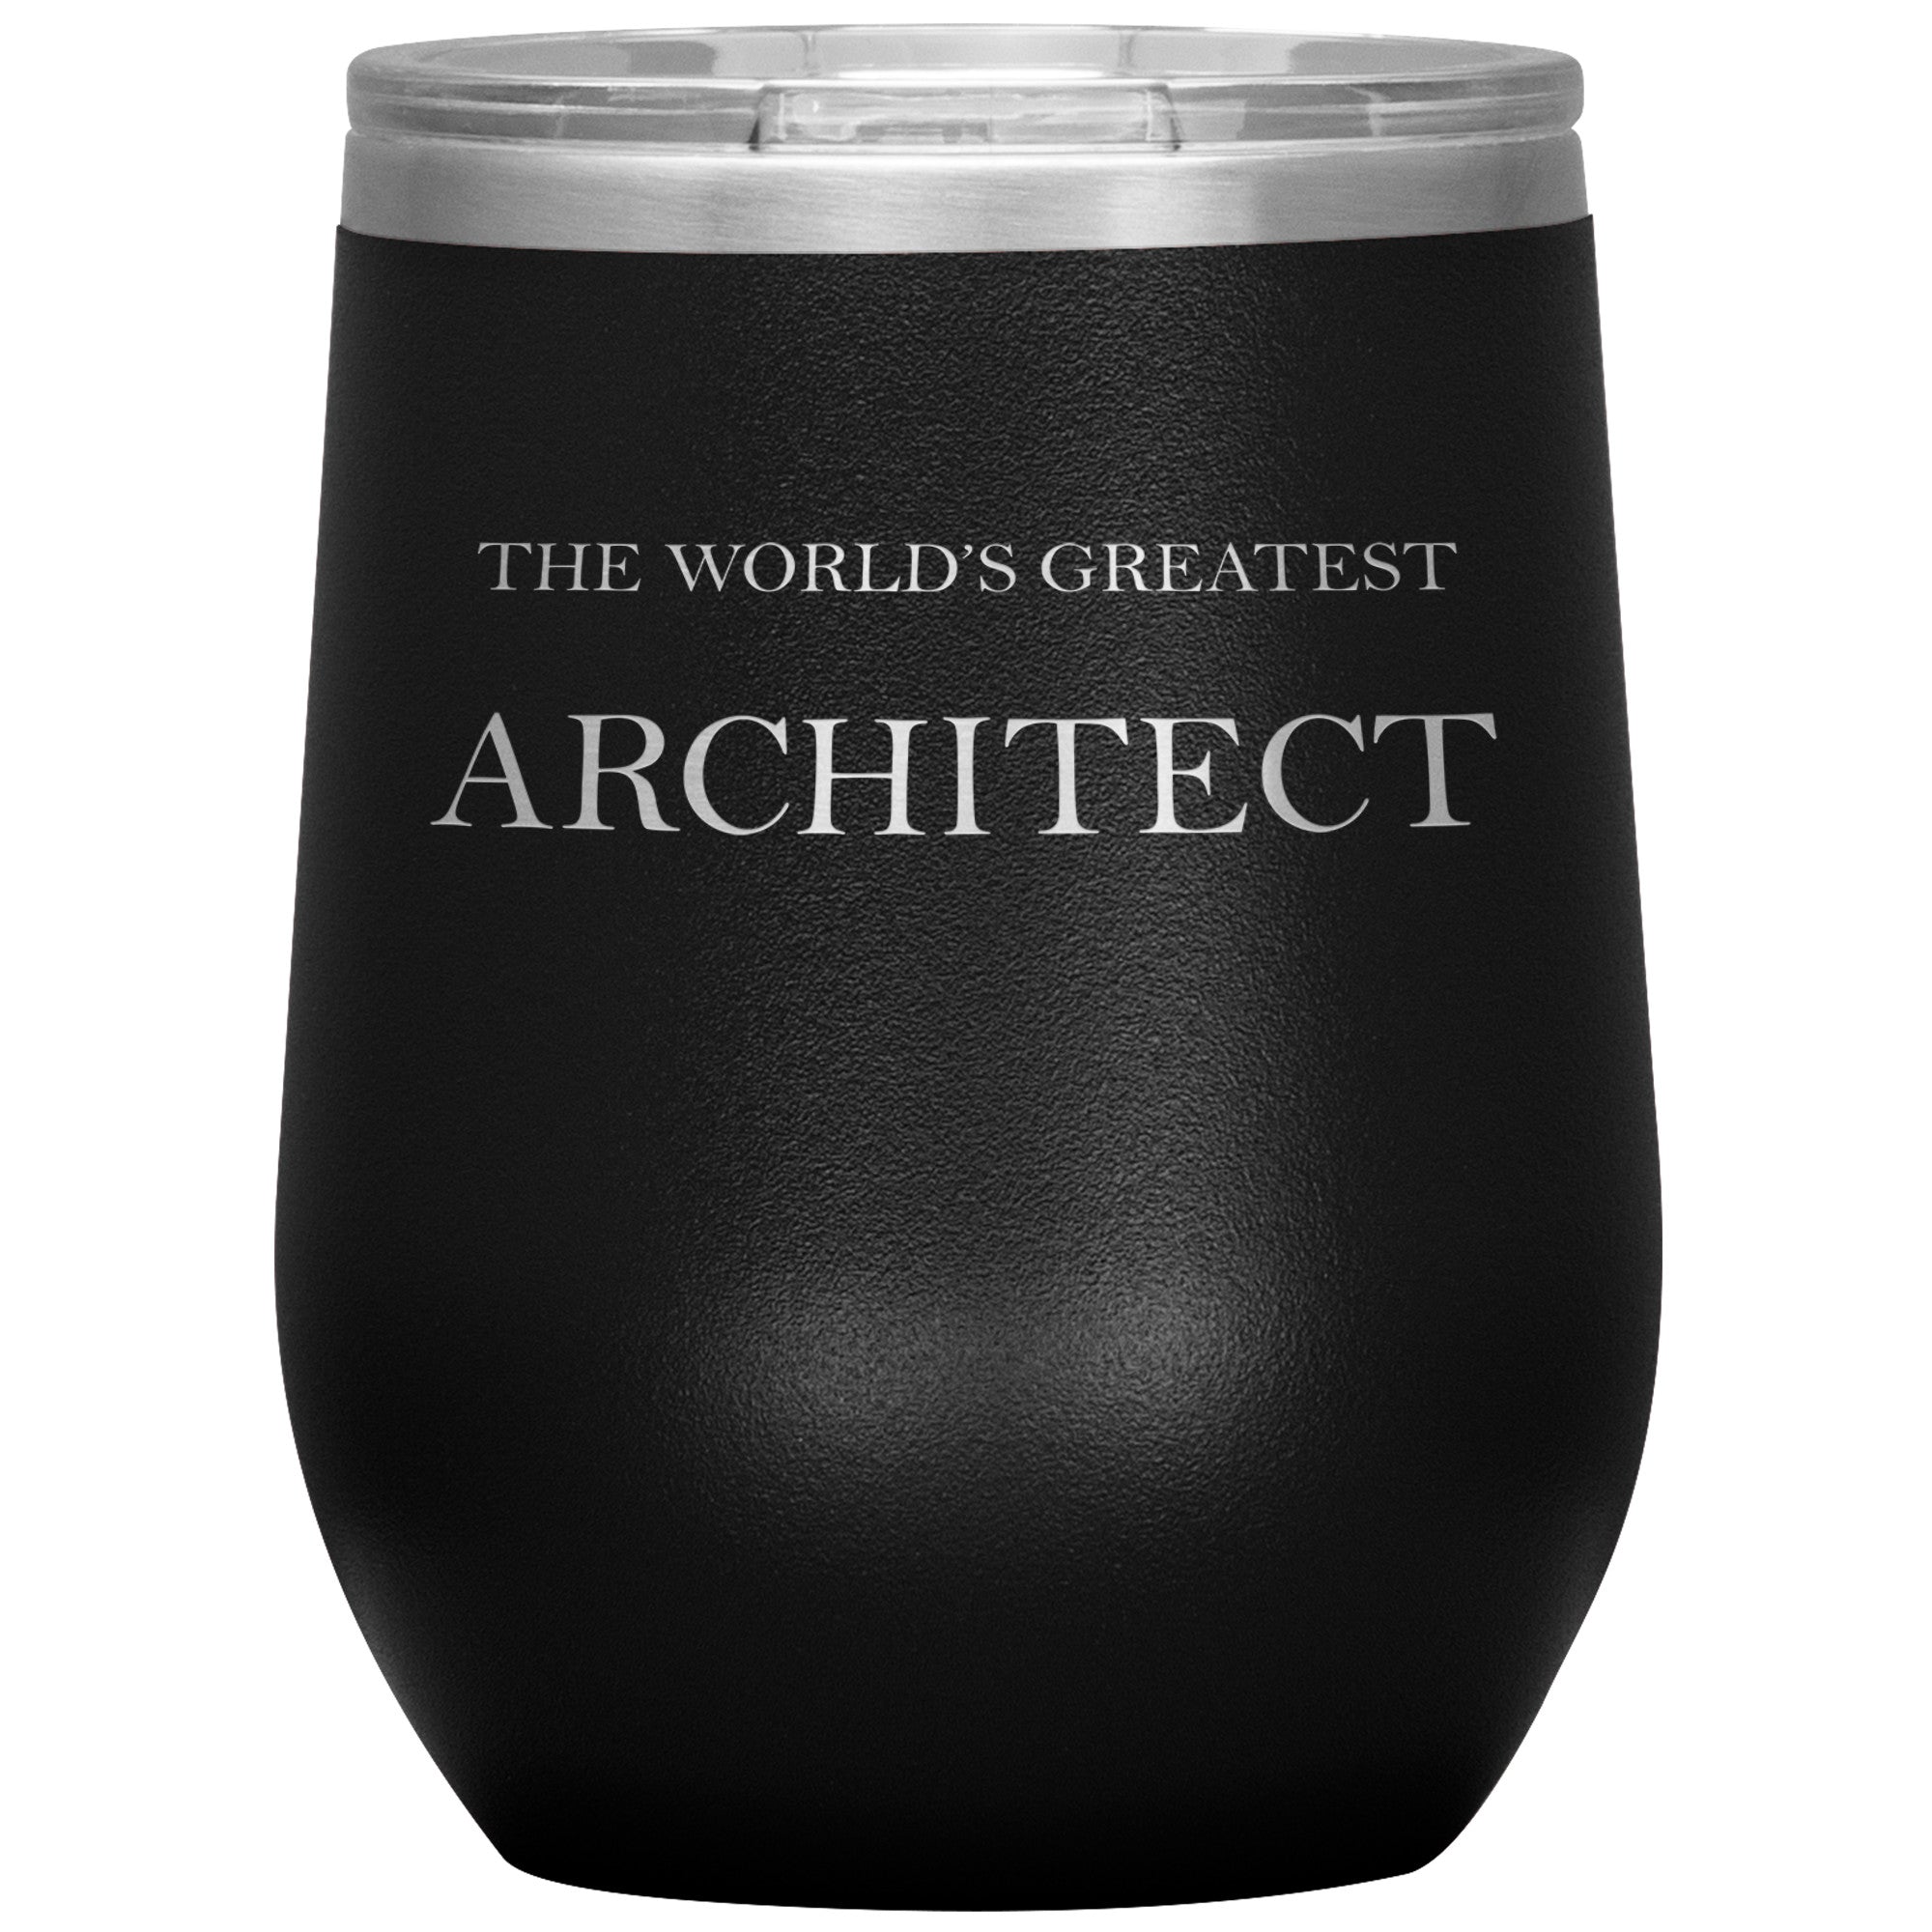 World's Greatest Architect v2 - 12oz Insulated Wine Tumbler